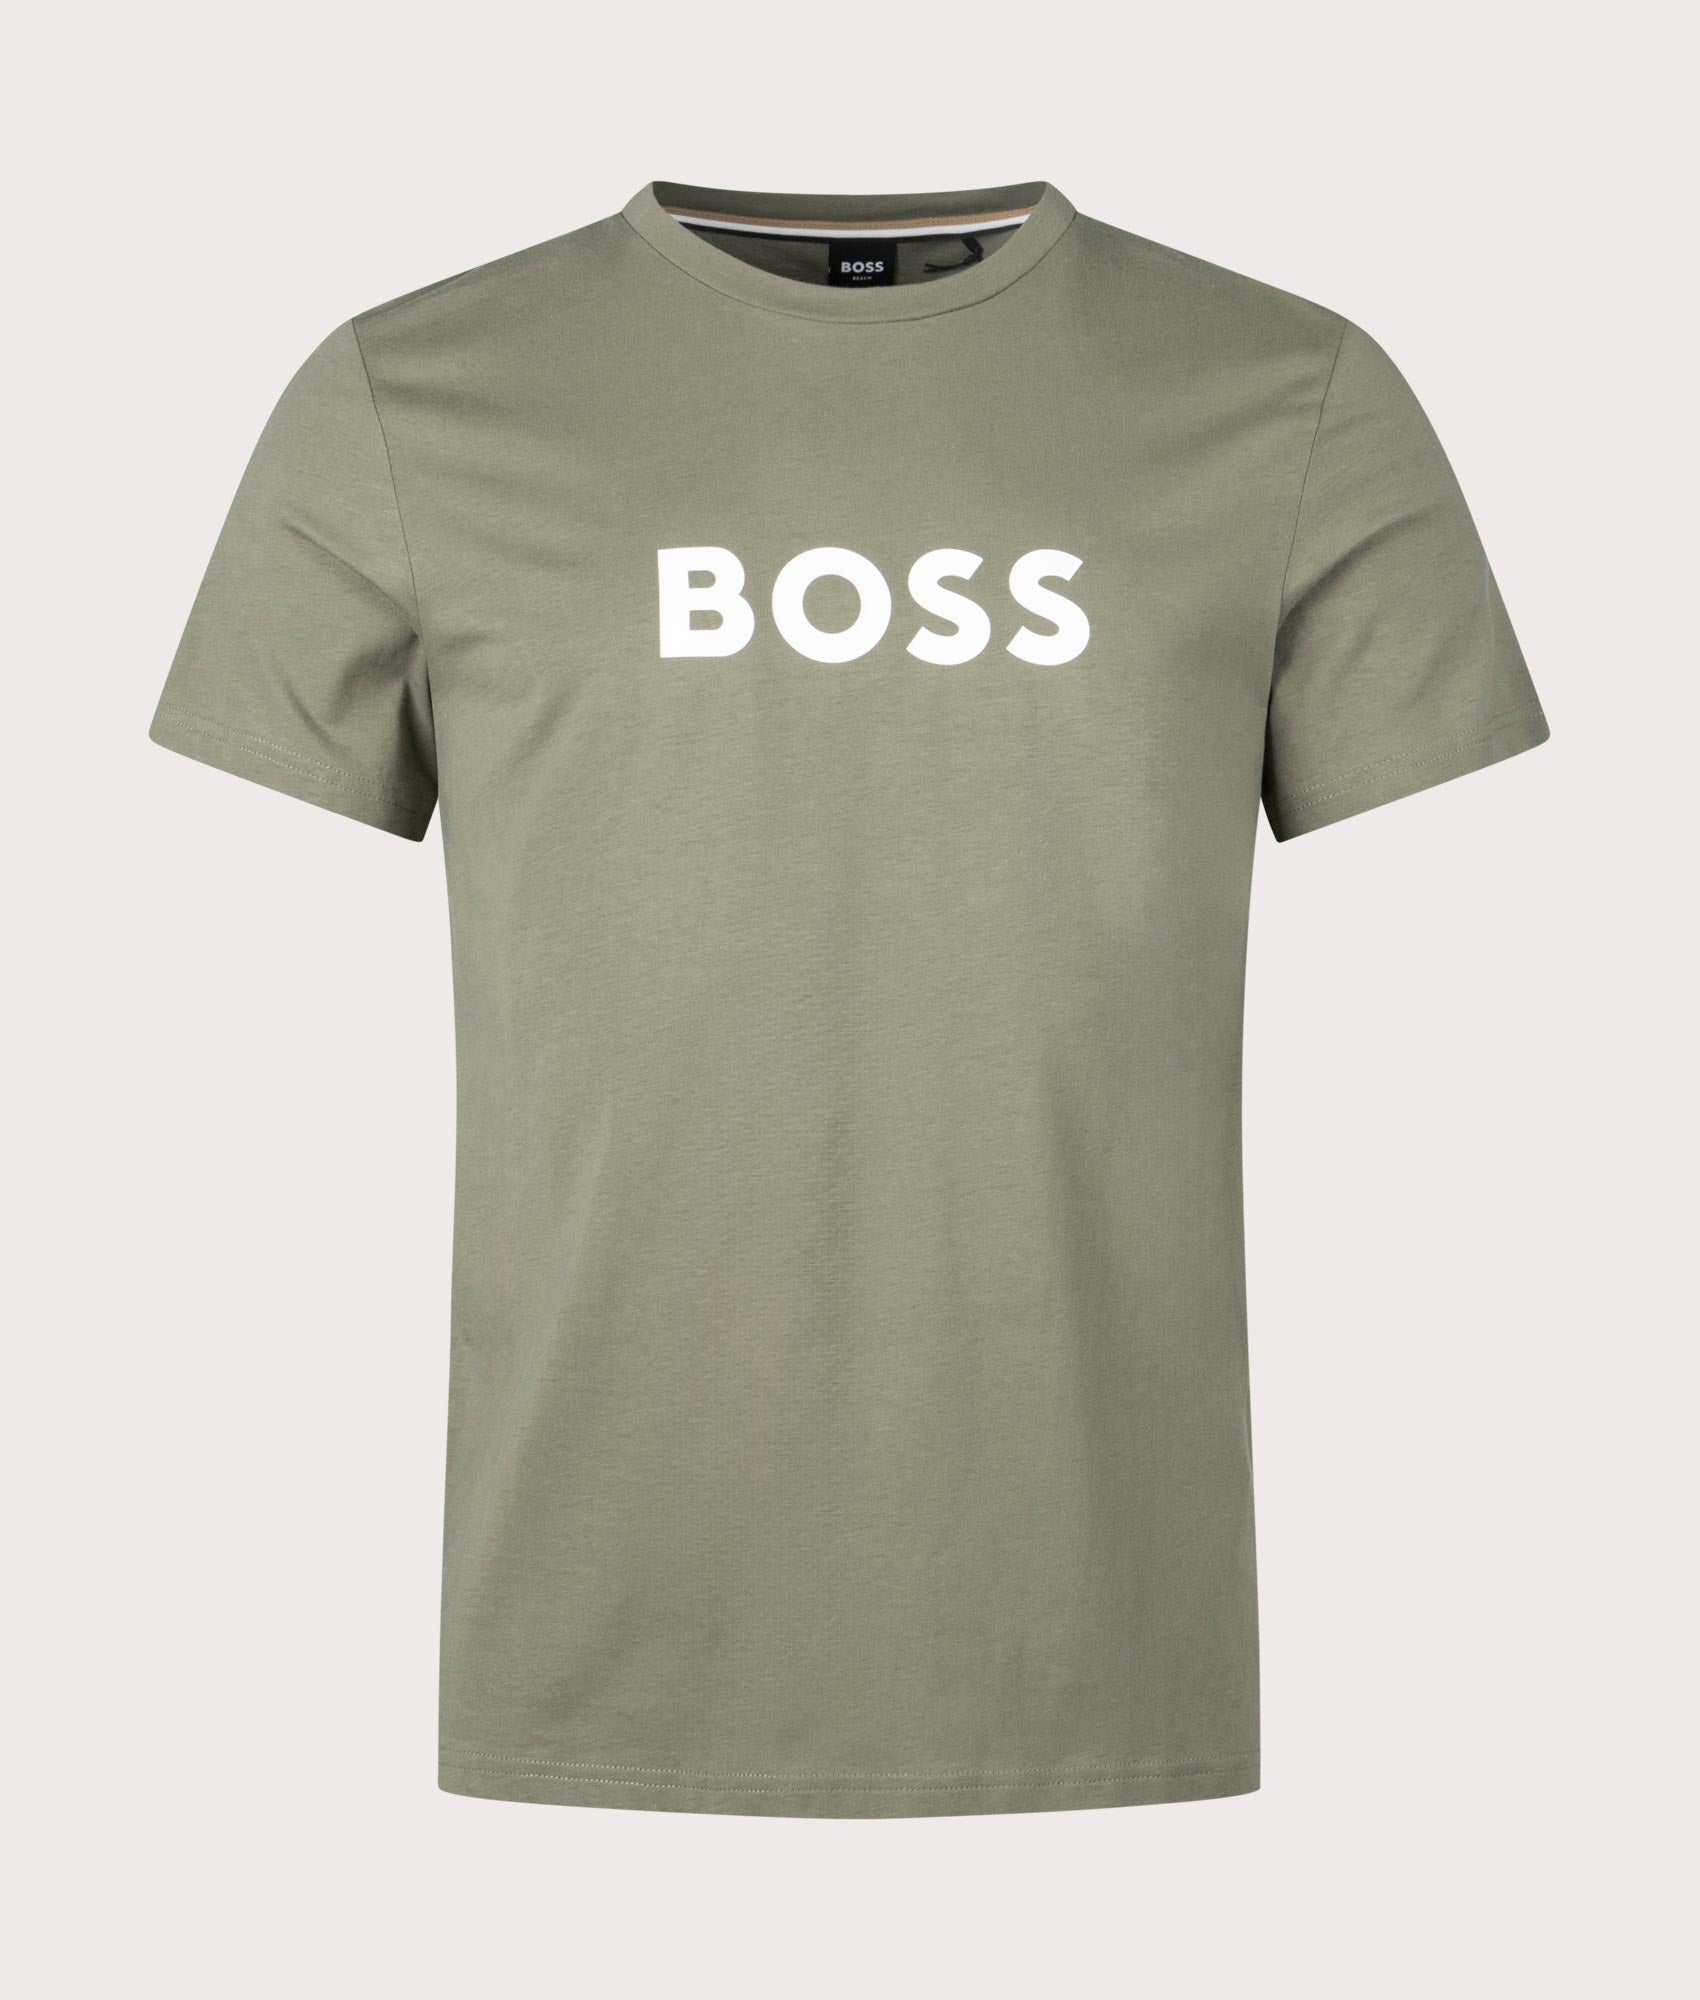 BOSS Mens Round Neck T-Shirt - Colour: 250 Beige/Khaki - Size: Large